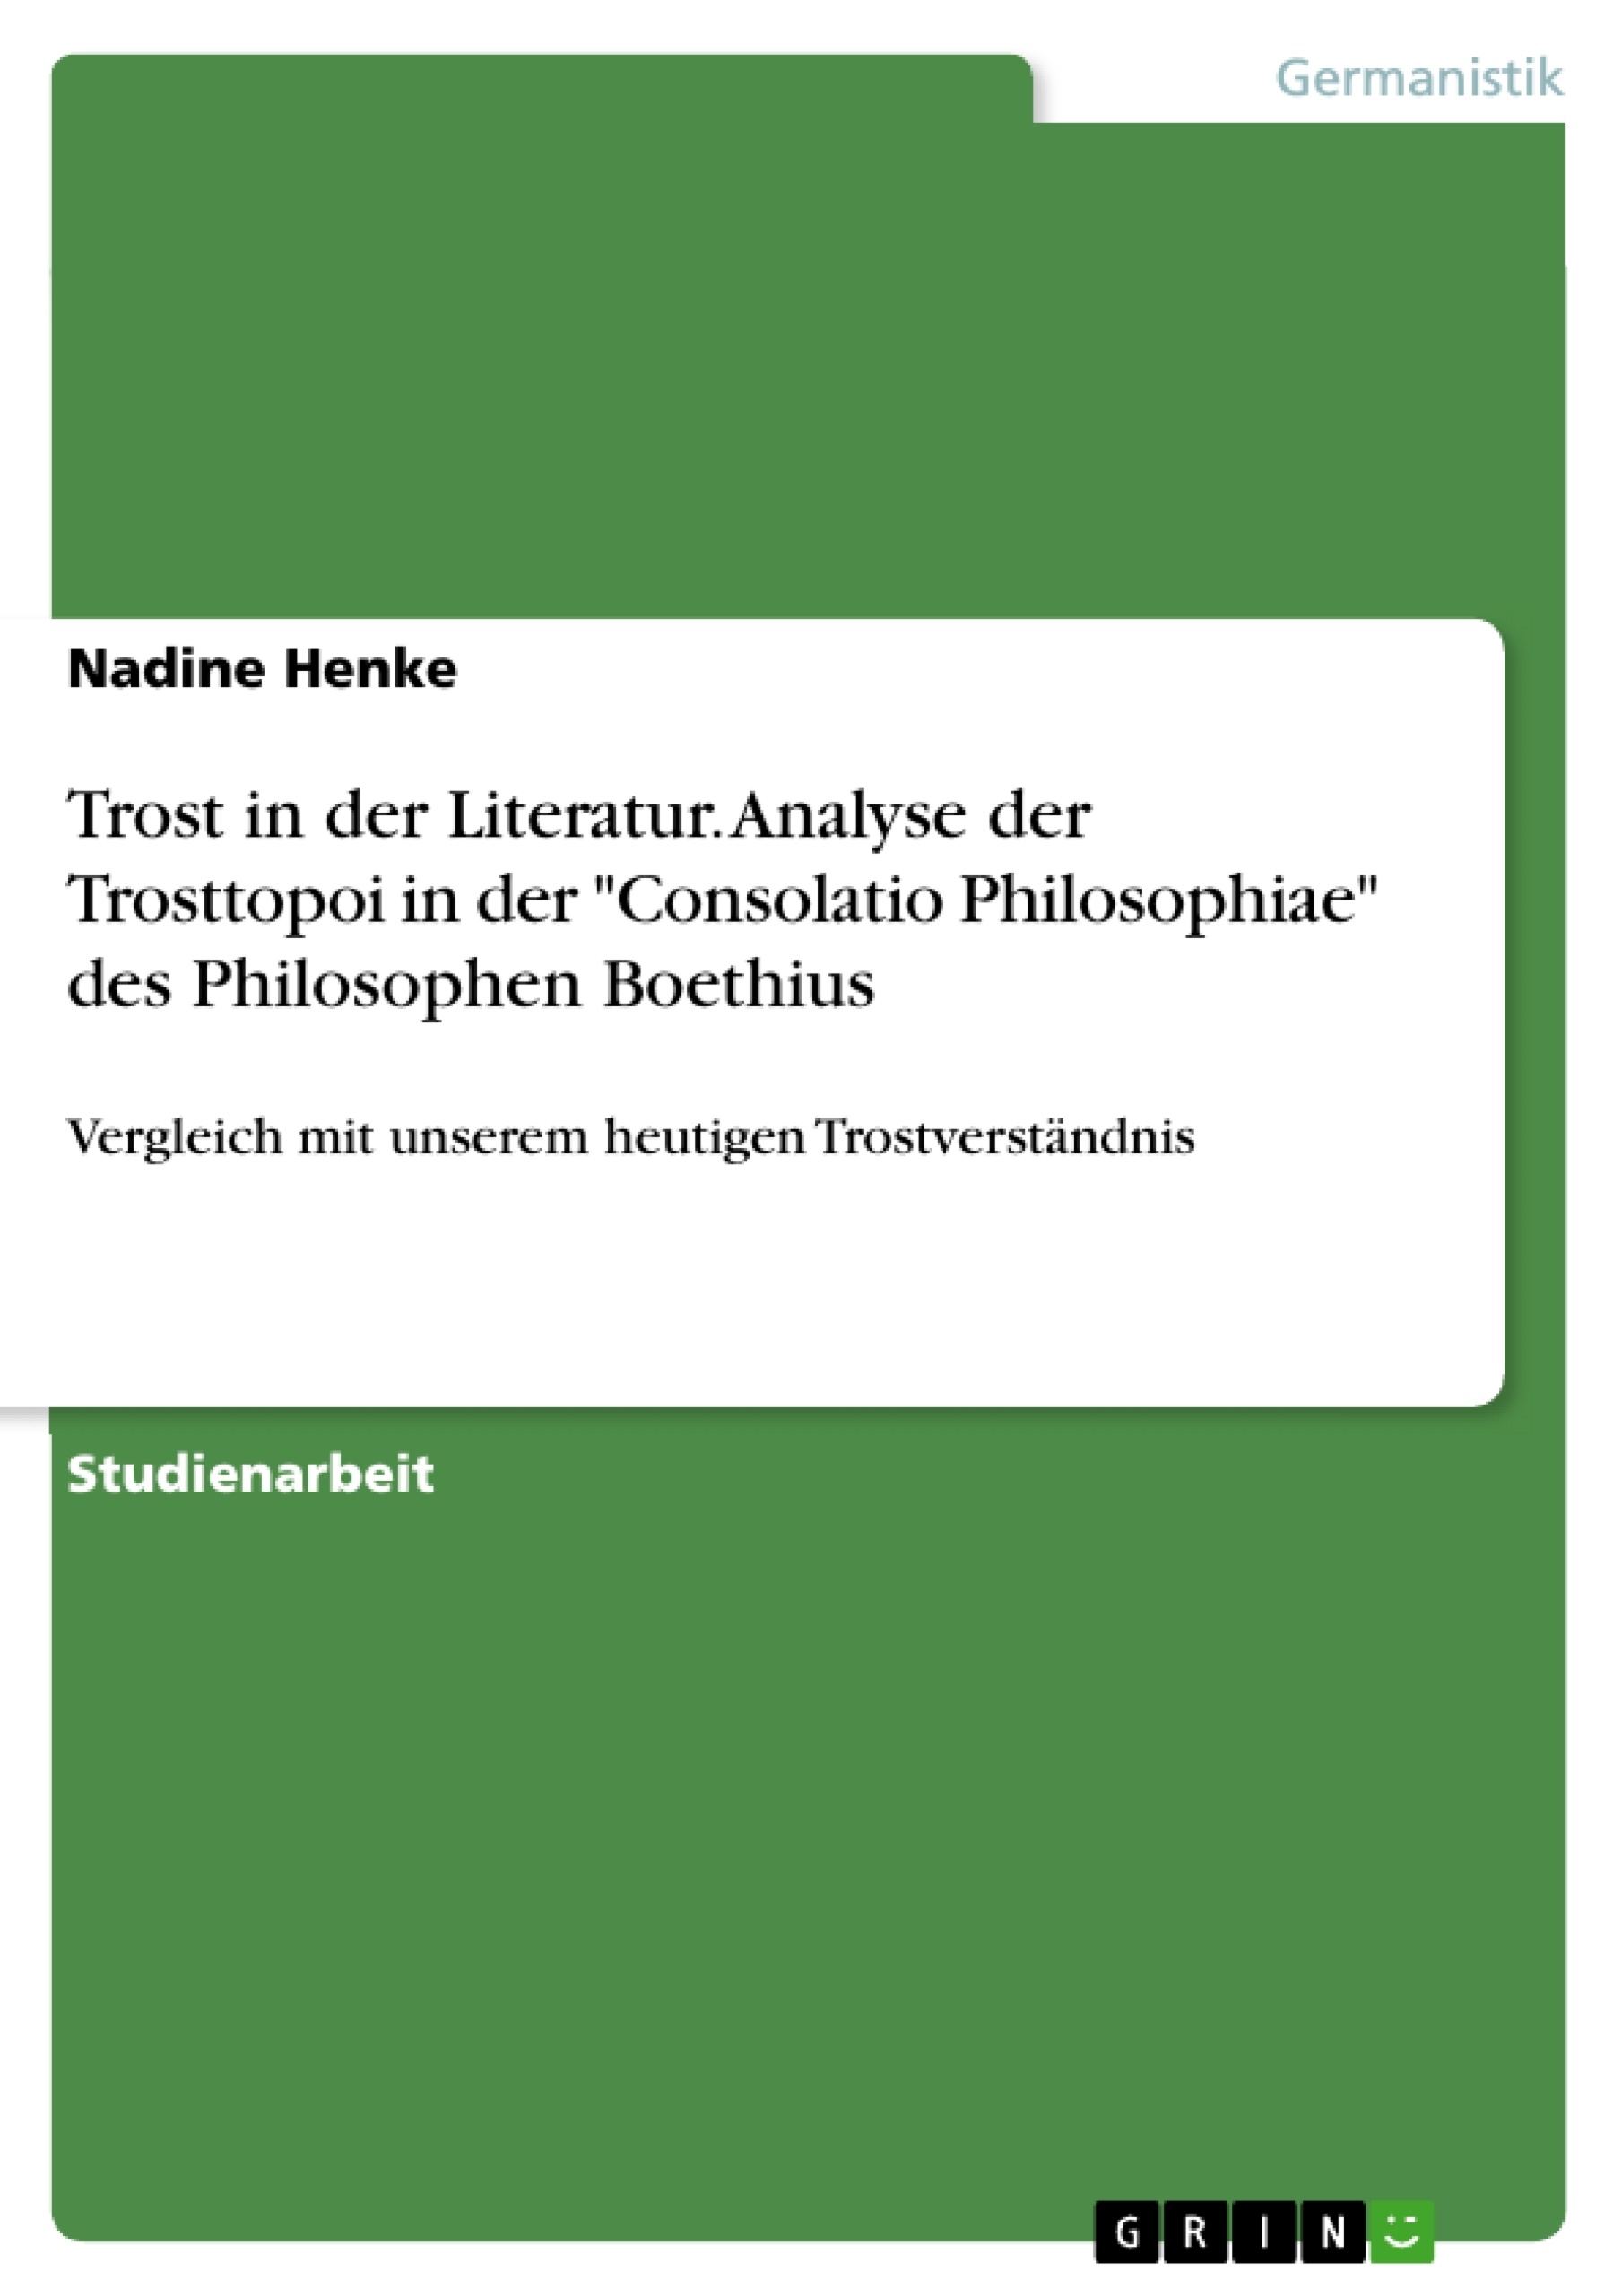 Title: Trost in der Literatur. Analyse der Trosttopoi in der "Consolatio Philosophiae" des Philosophen Boethius